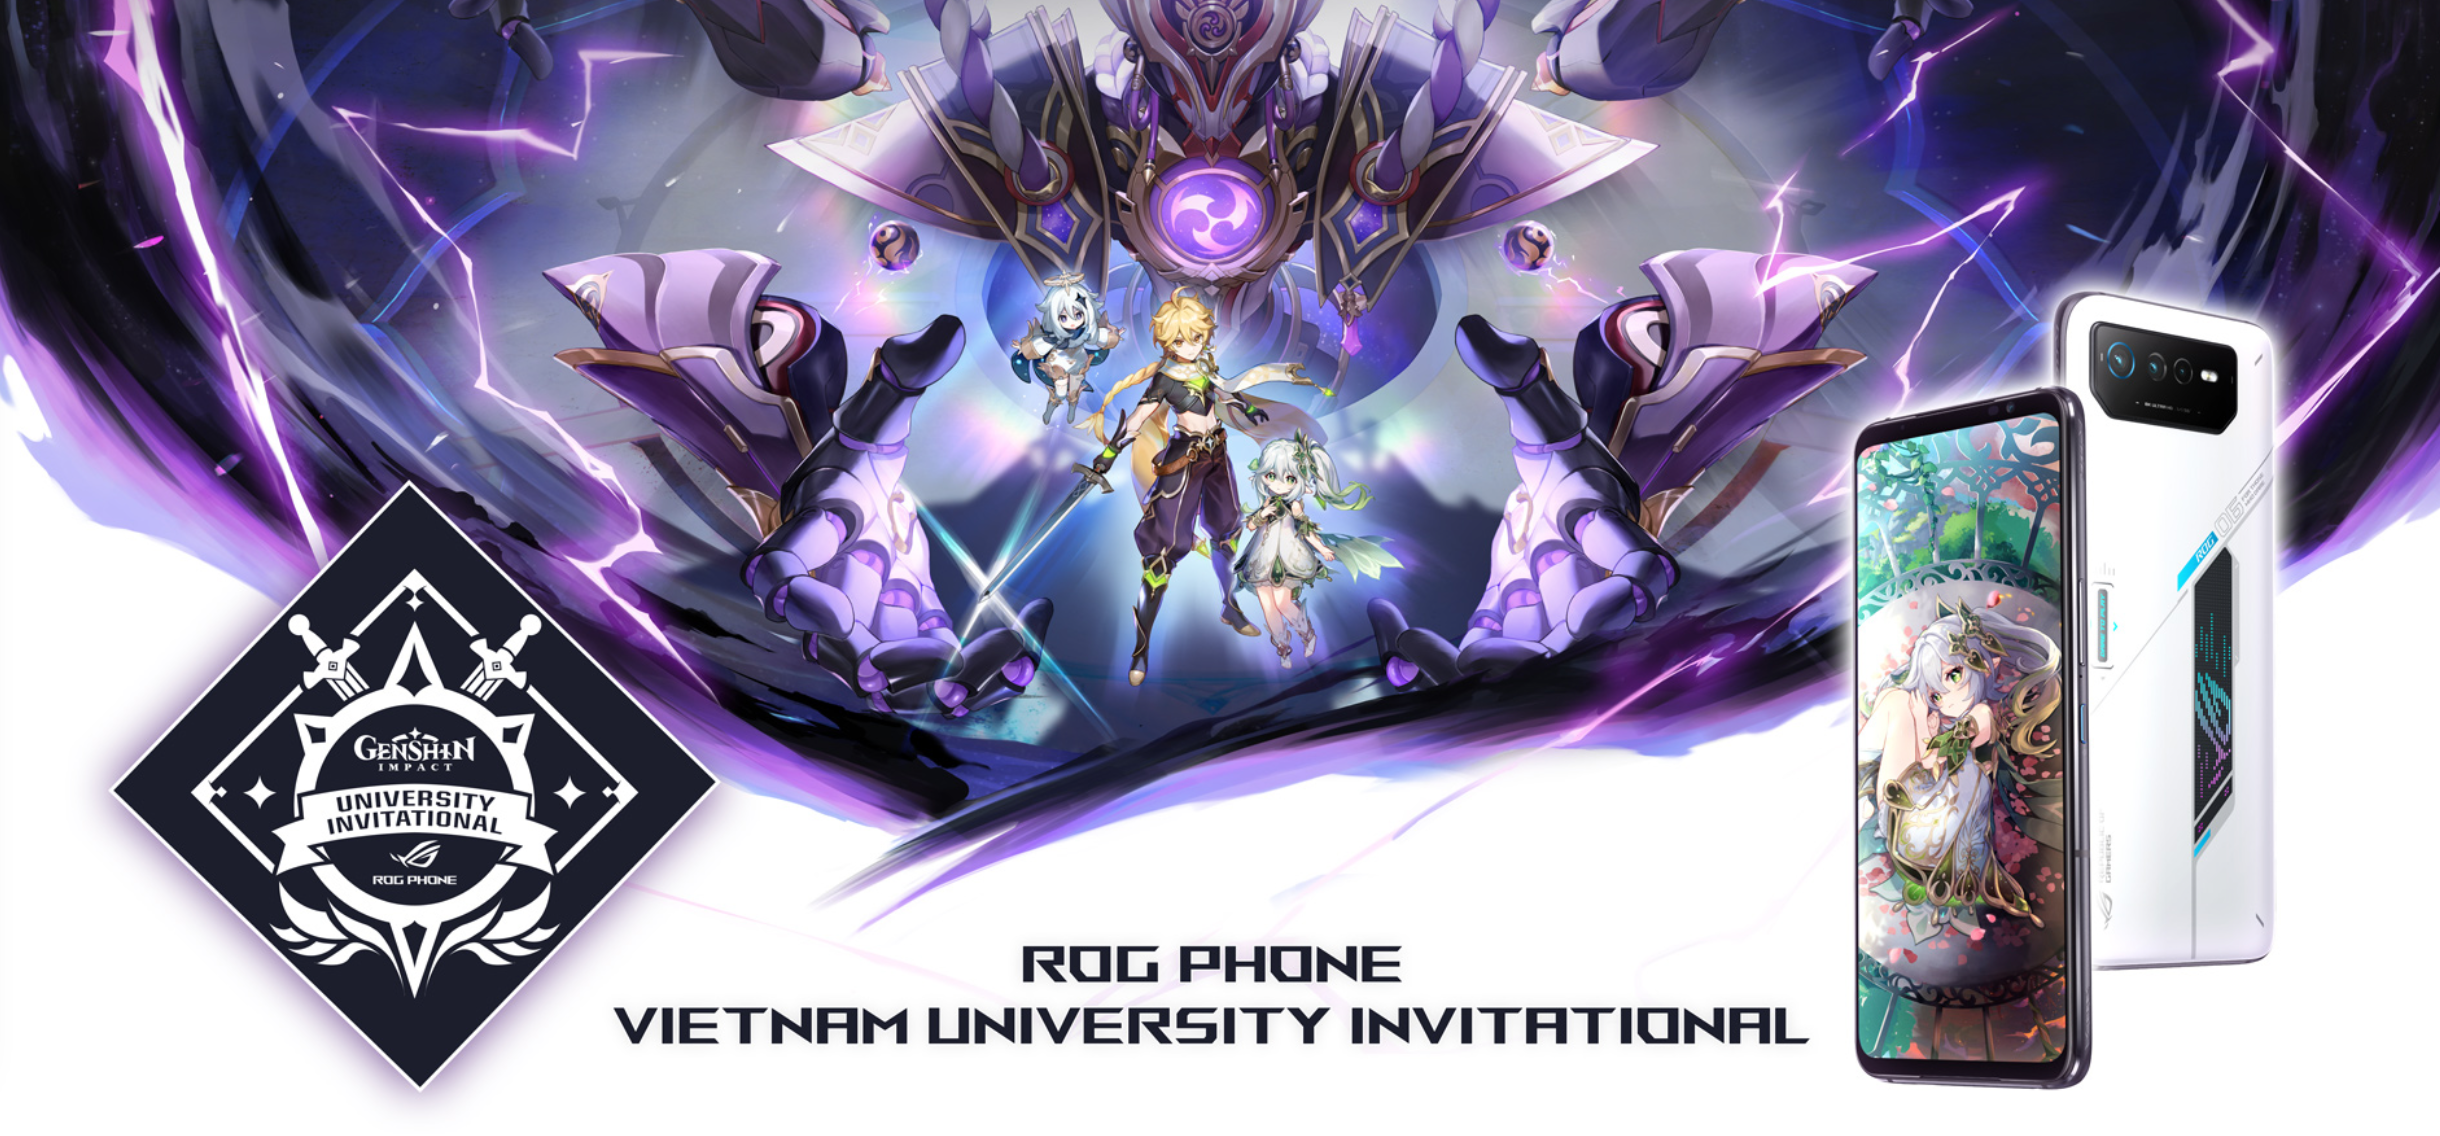 ASUS công bố giải đấu ROG Phone Vietnam University Invitational kết hợp cùng tựa game Genshin Impact